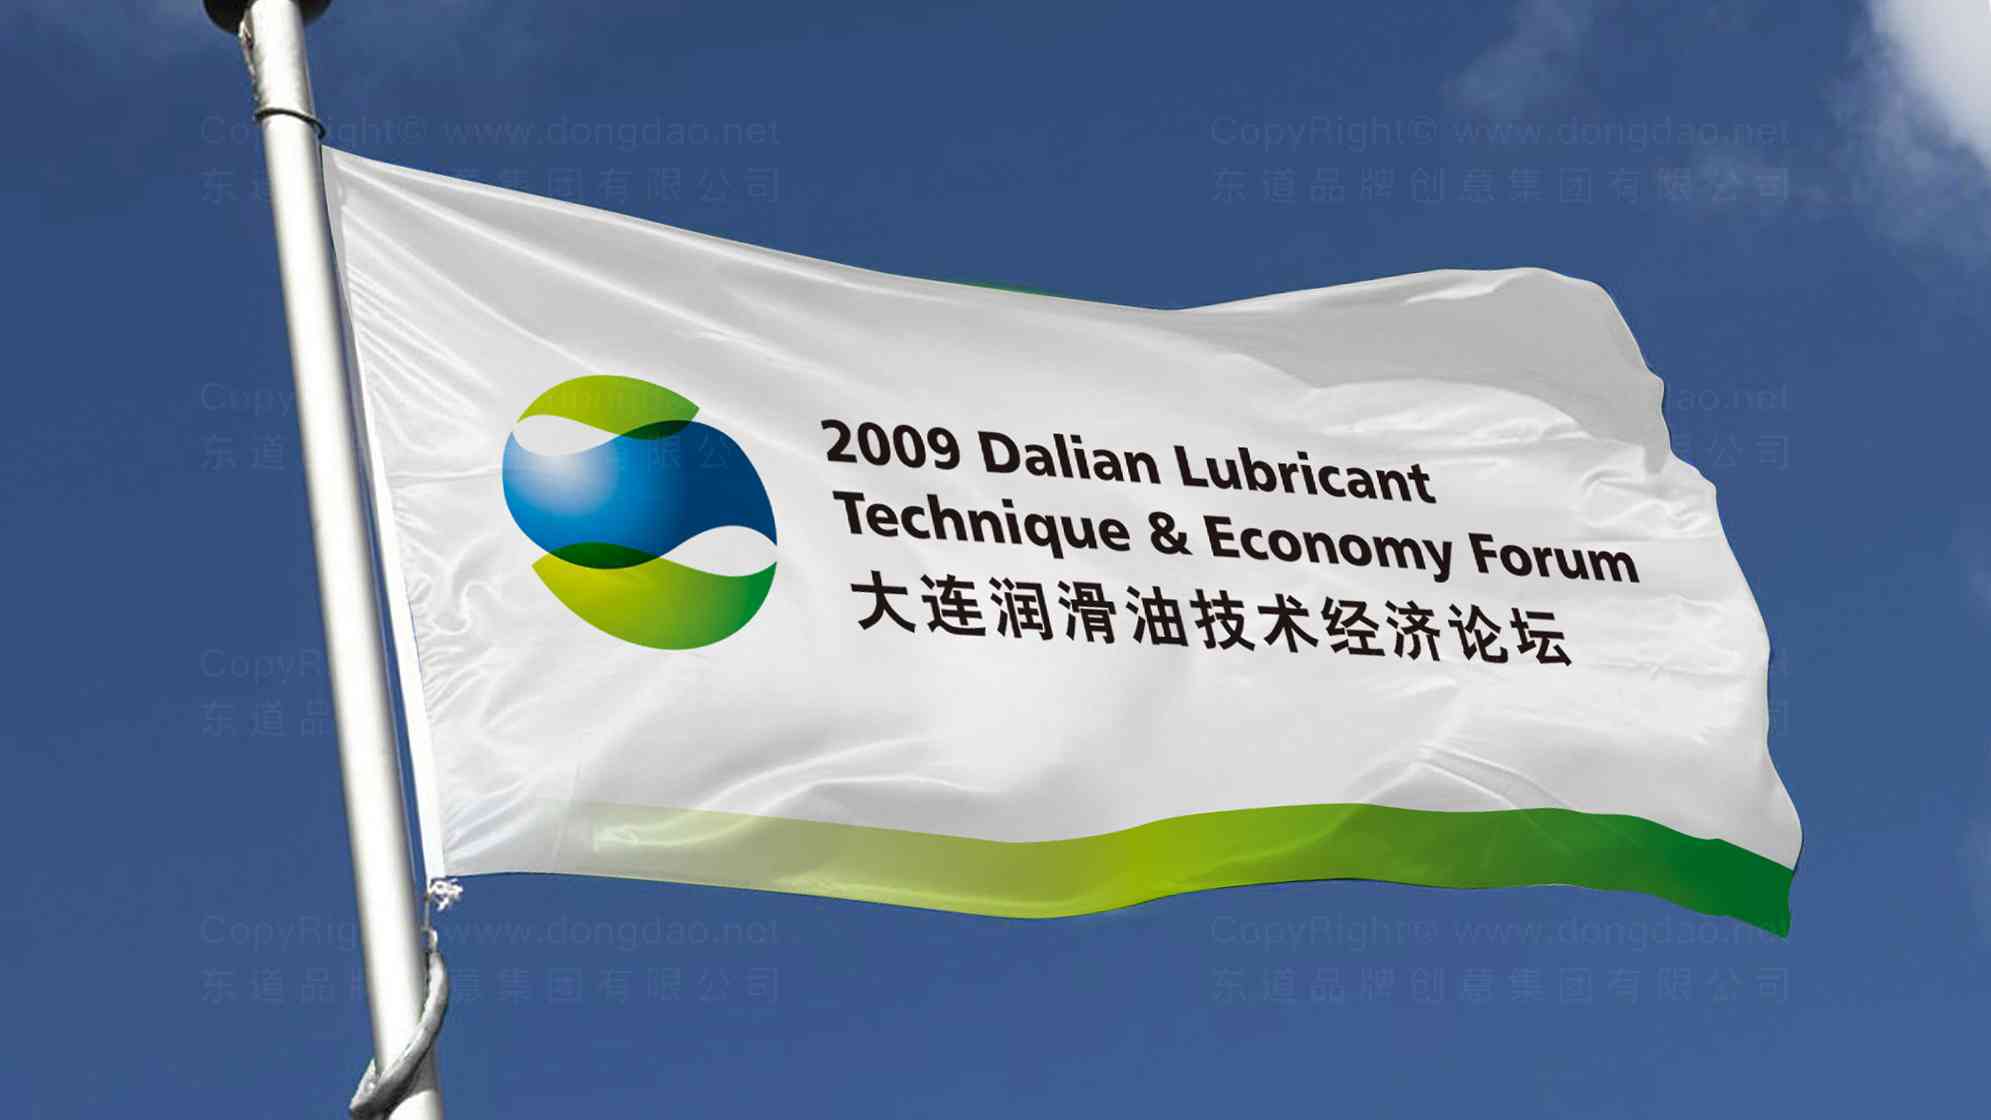 大连润滑油技术经济论坛logo设计图片素材